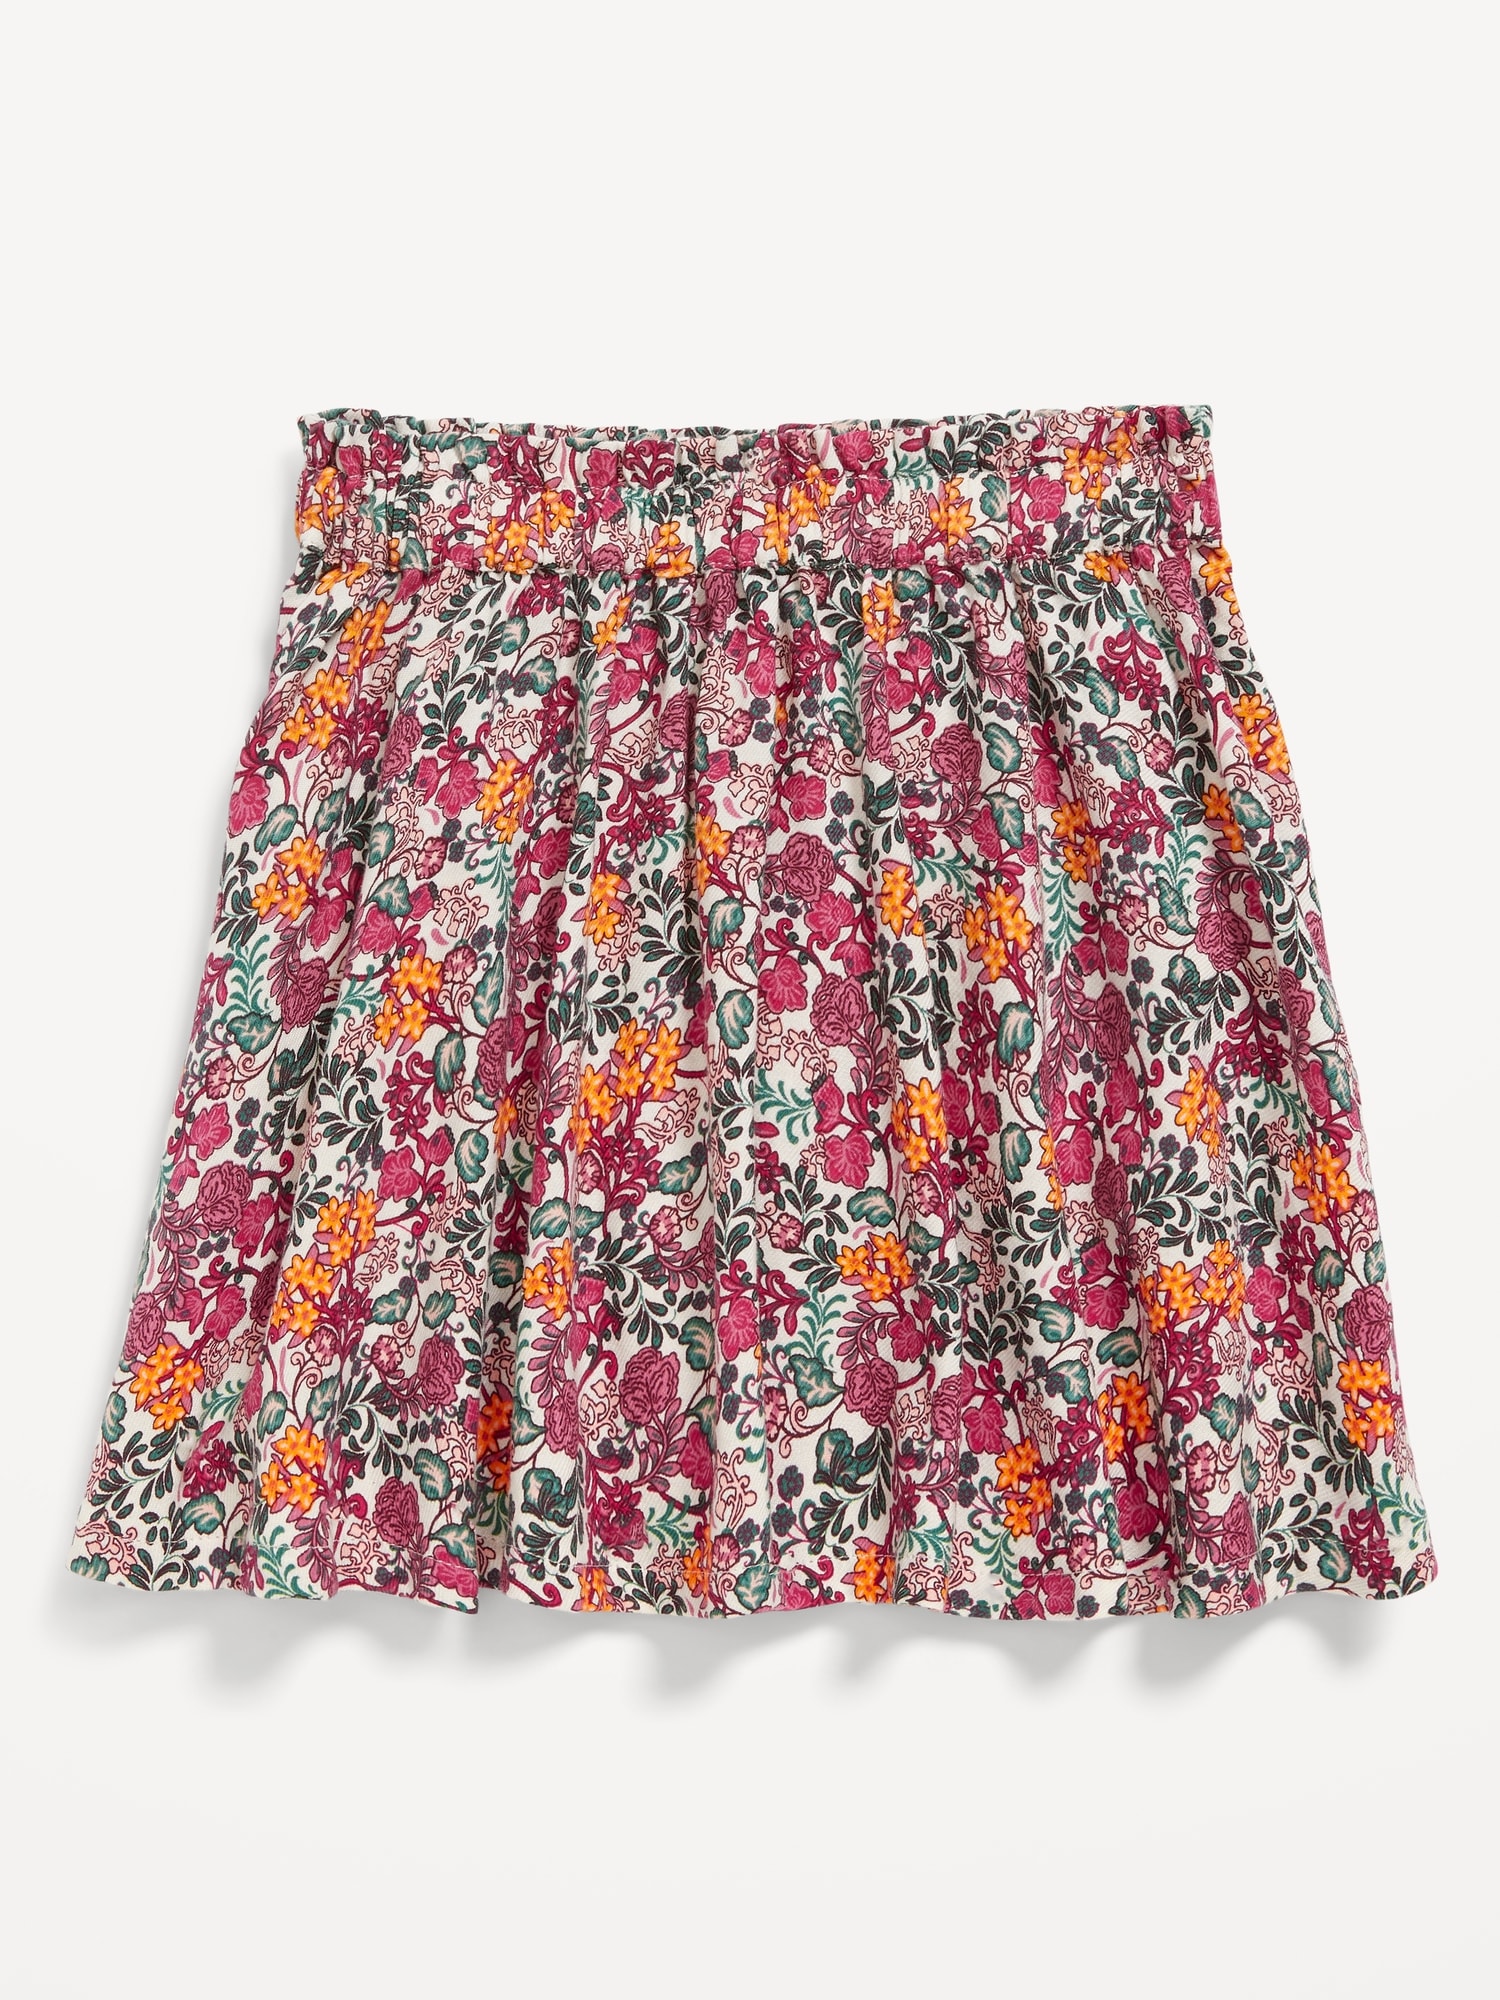 Printed Ruffled Skirt for Toddler Girls | Old Navy